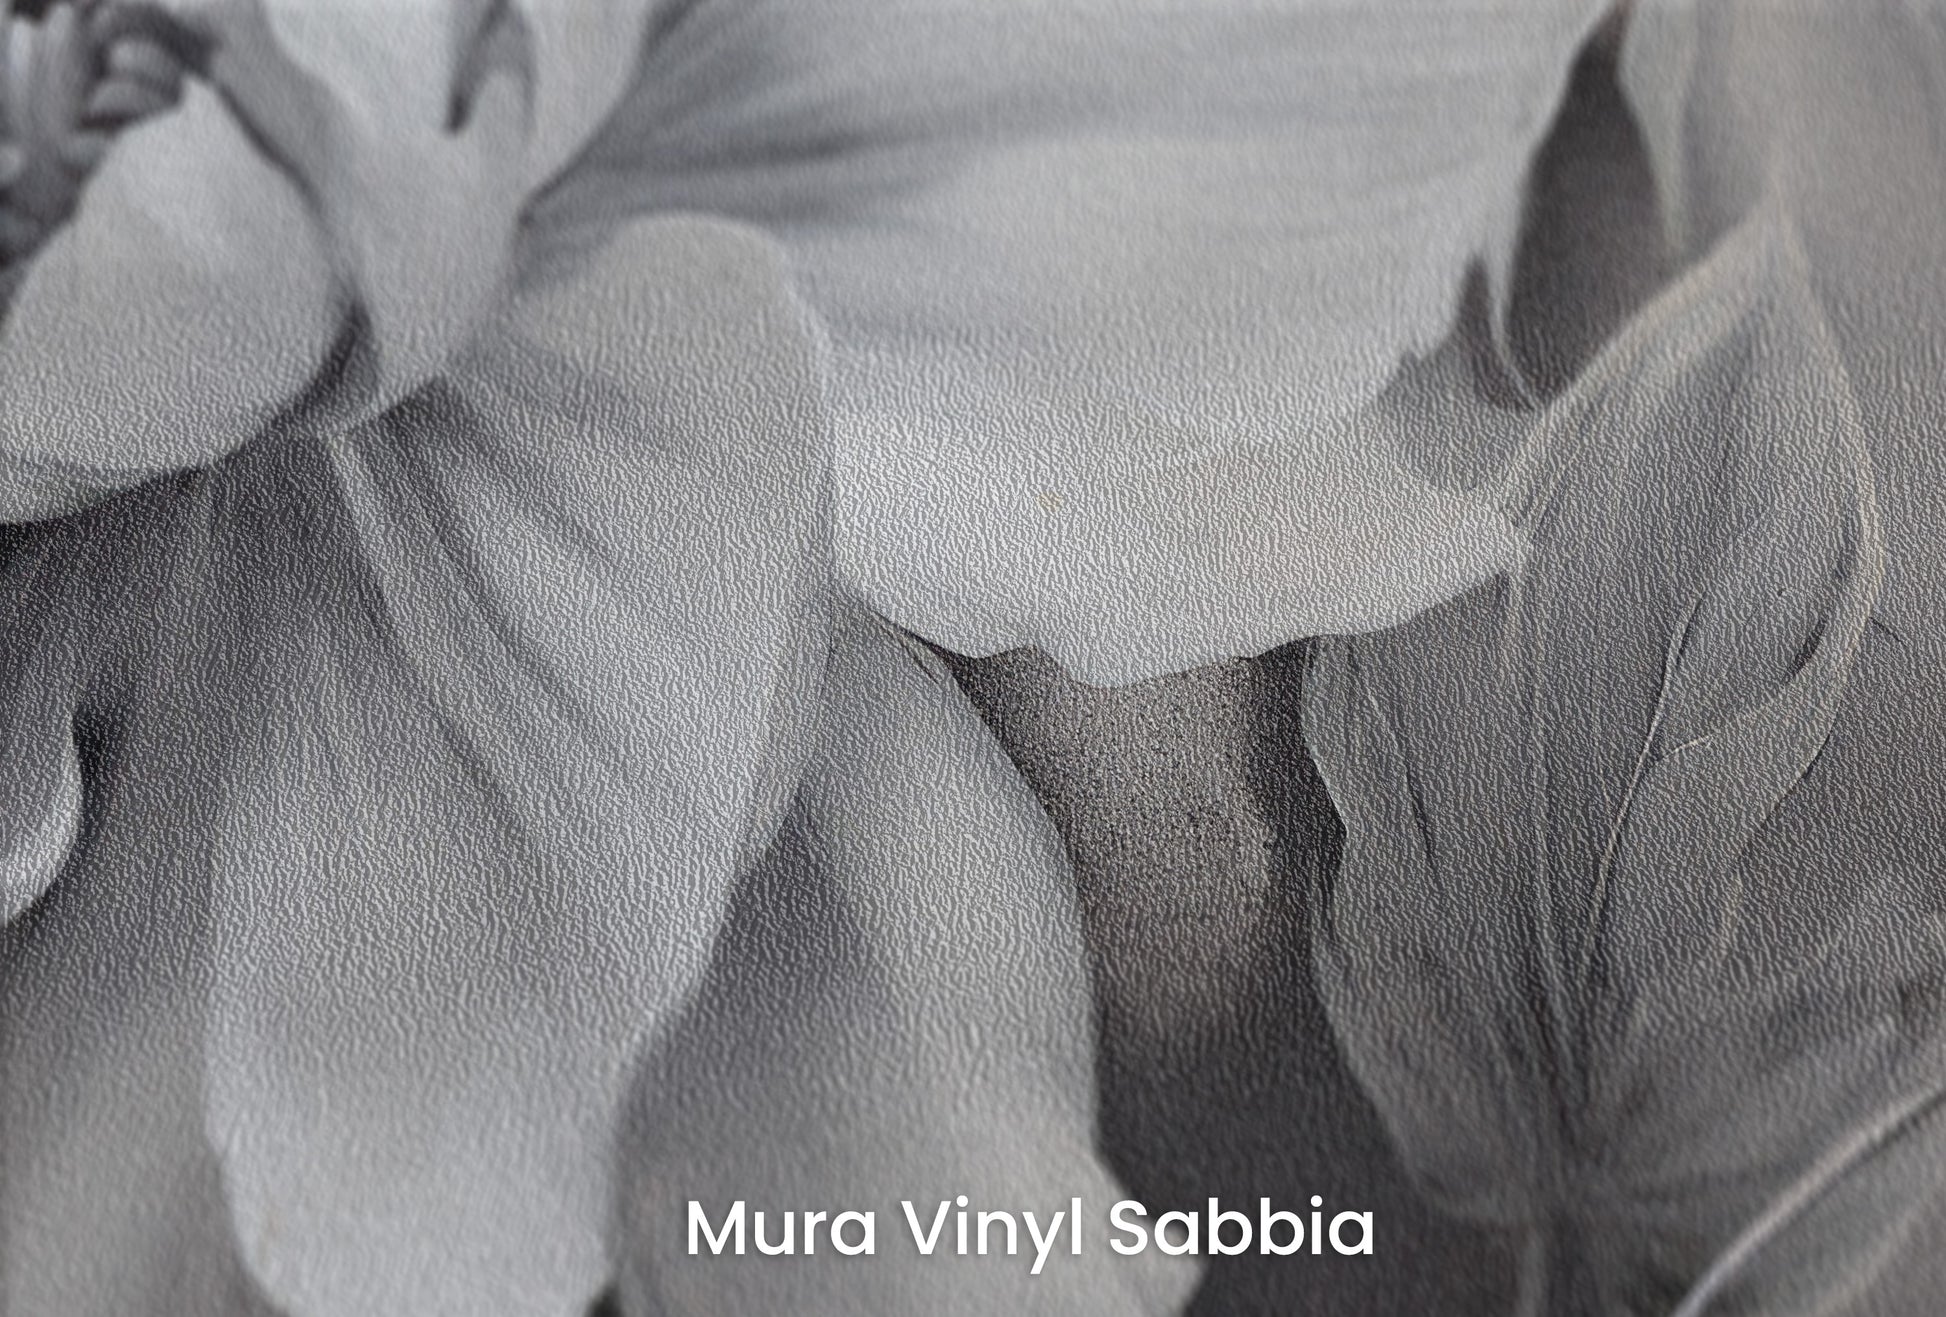 Zbliżenie na artystyczną fototapetę o nazwie NOCTURNAL FLORAL WHISPERS na podłożu Mura Vinyl Sabbia struktura grubego ziarna piasku.